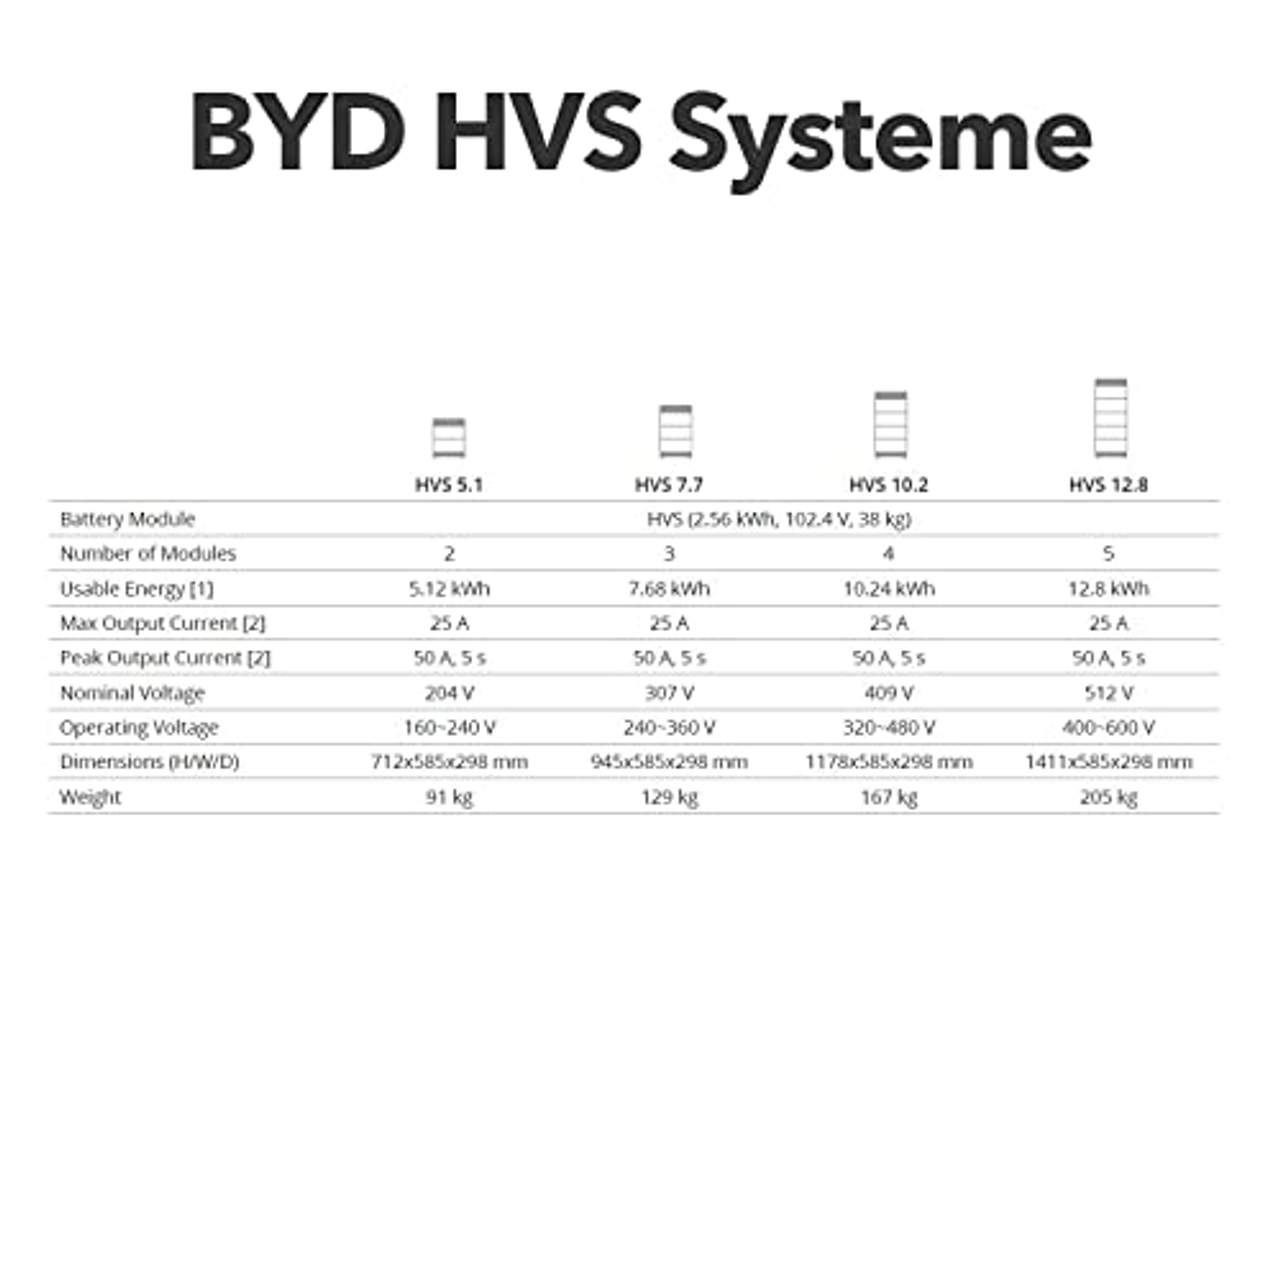 Power Werk BYD HVS Speicher 12.8 kWh